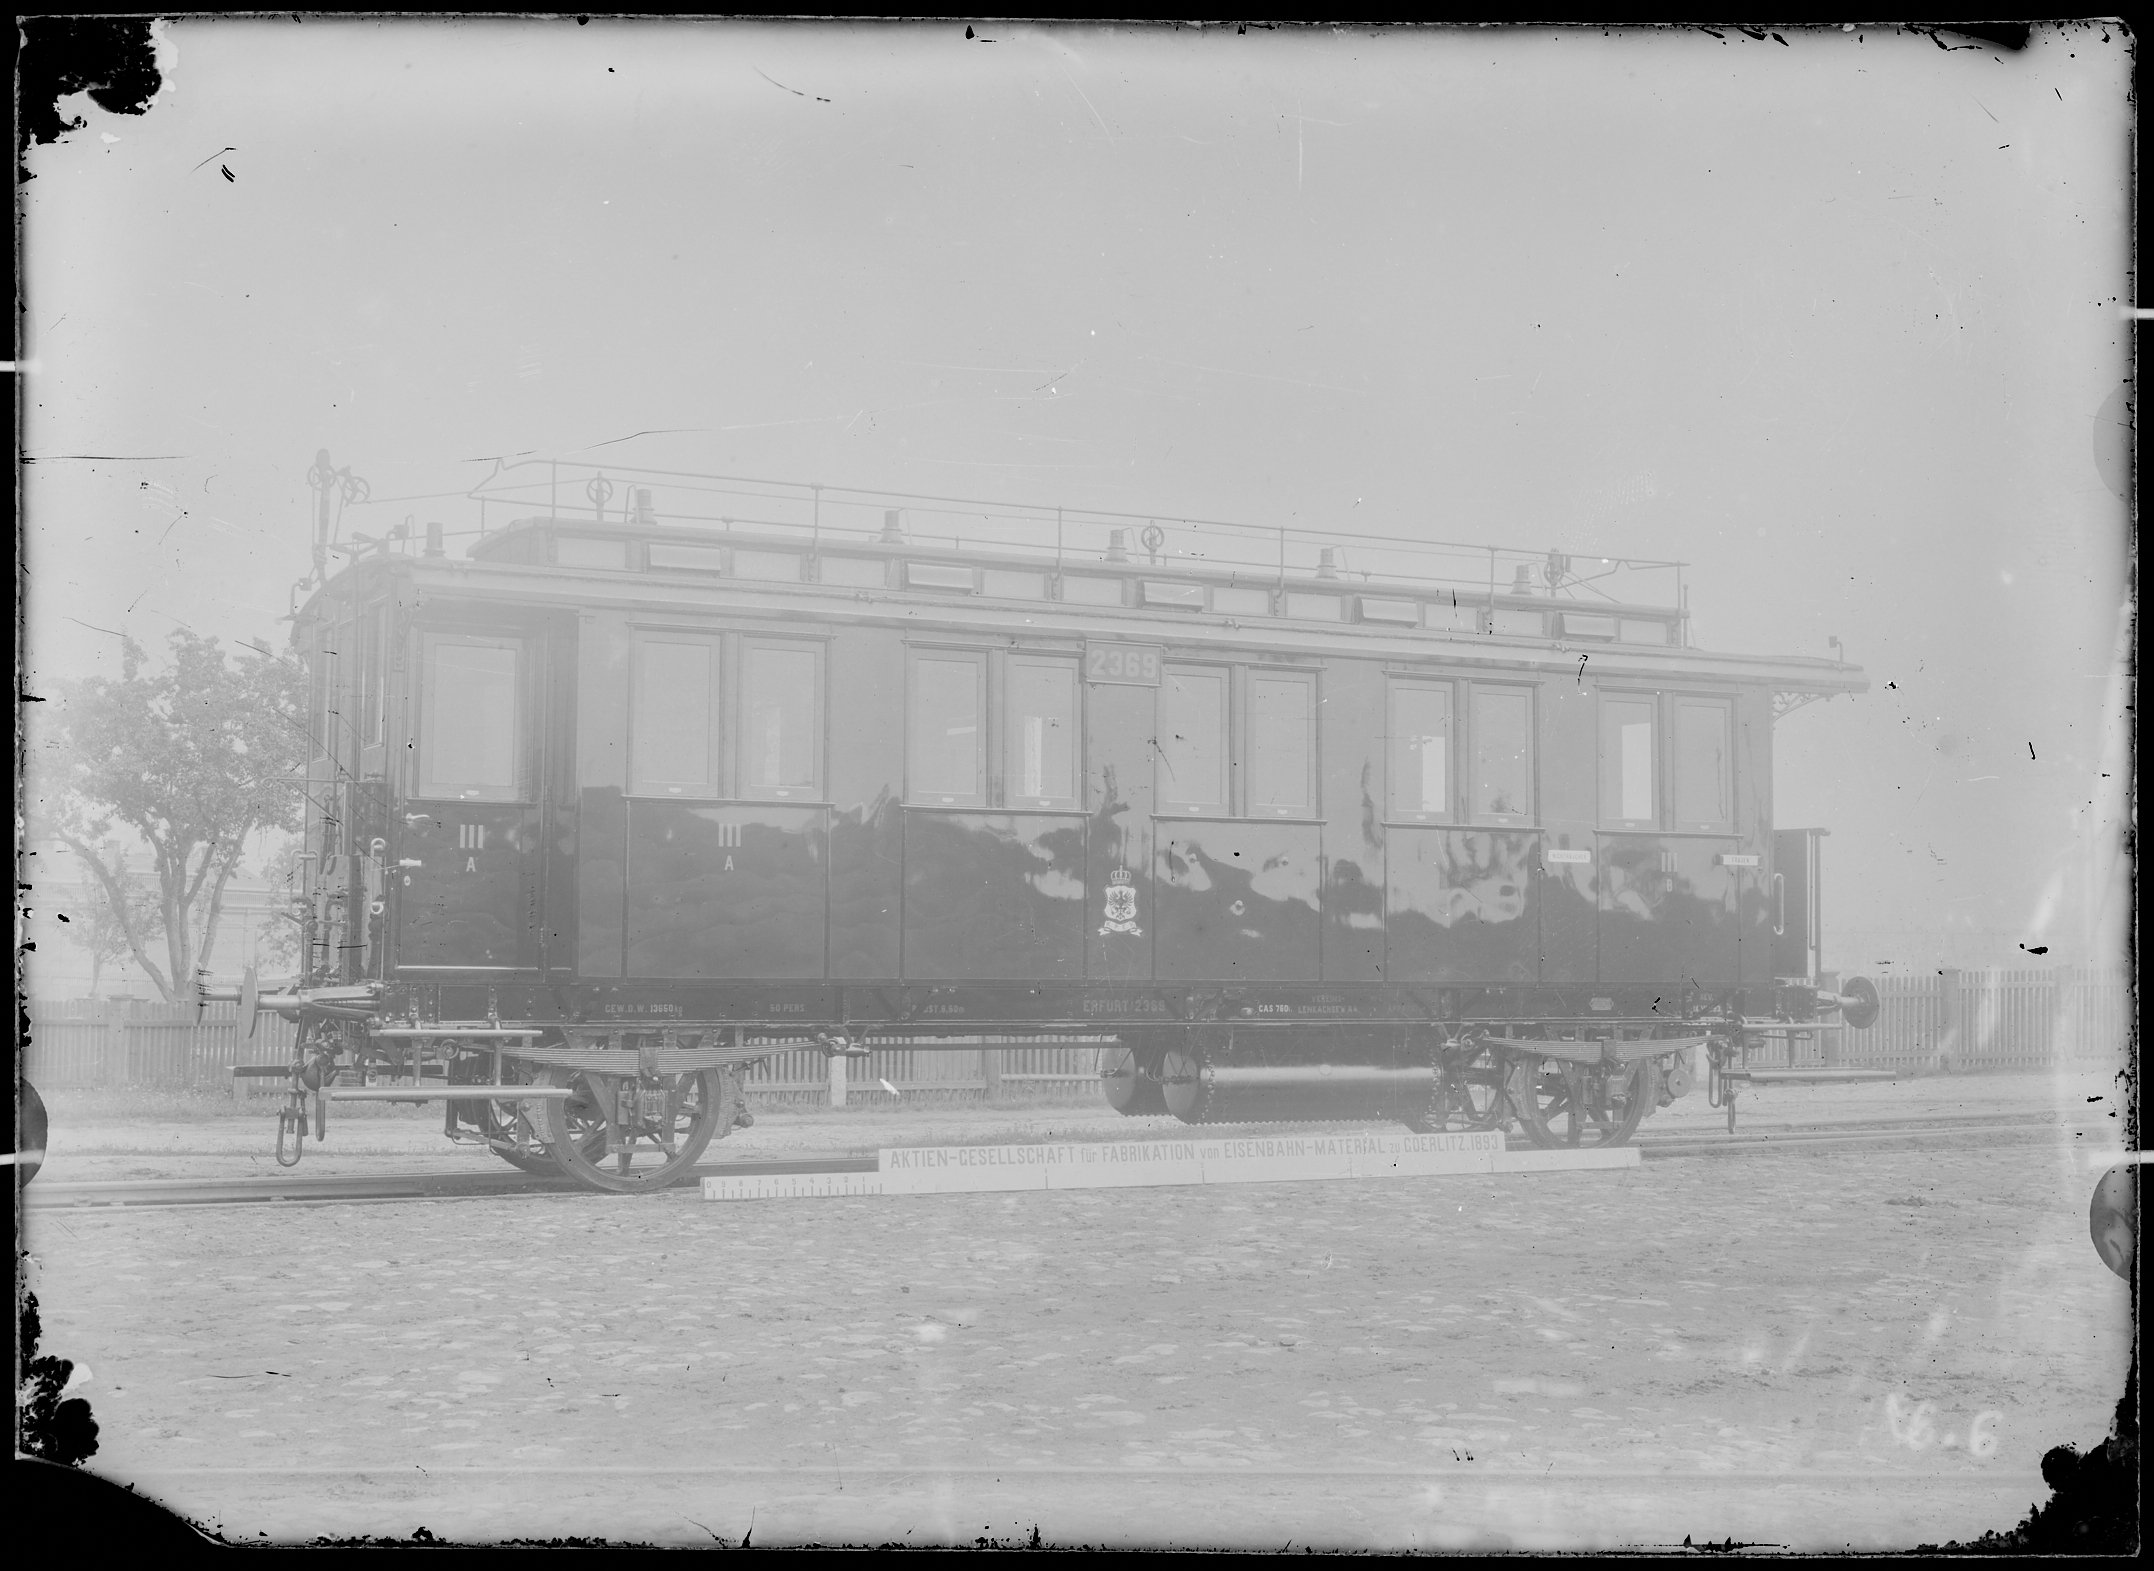 Fotografie: zweiachsiger Durchgangswagen dritter Klasse, Gattung Ci (Schrägansicht), 1893. Königlich Preußische Eisenbahn-Verwaltung (K.P.E.V.)? (Verkehrsmuseum Dresden CC BY-NC-SA)